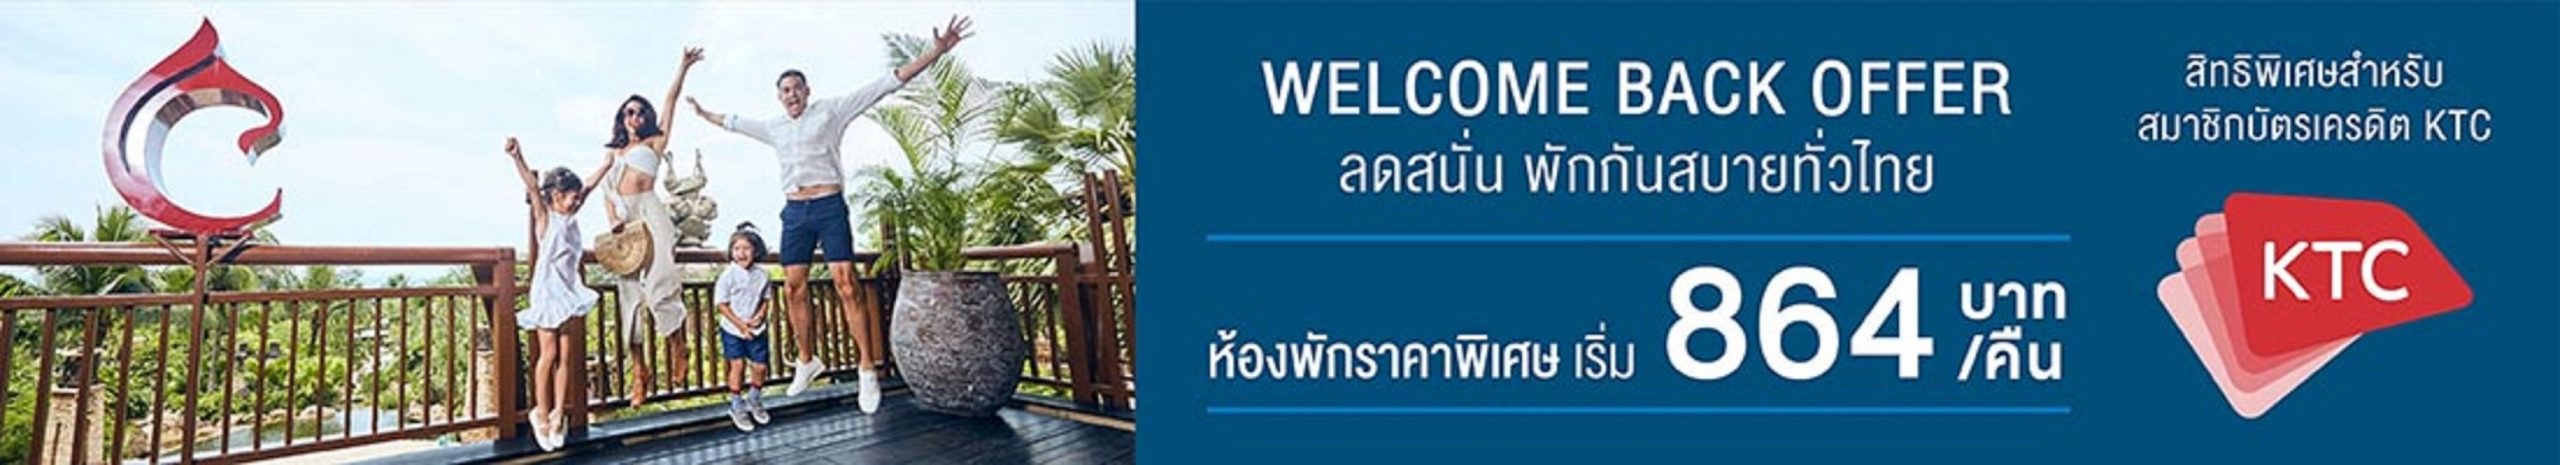 เคทีซีผนึกเซ็นทาราทั่วไทยจัดโปรเด็ด Welcome Back Offer ที่พักเริ่มต้น 864 บาทต่อคืน